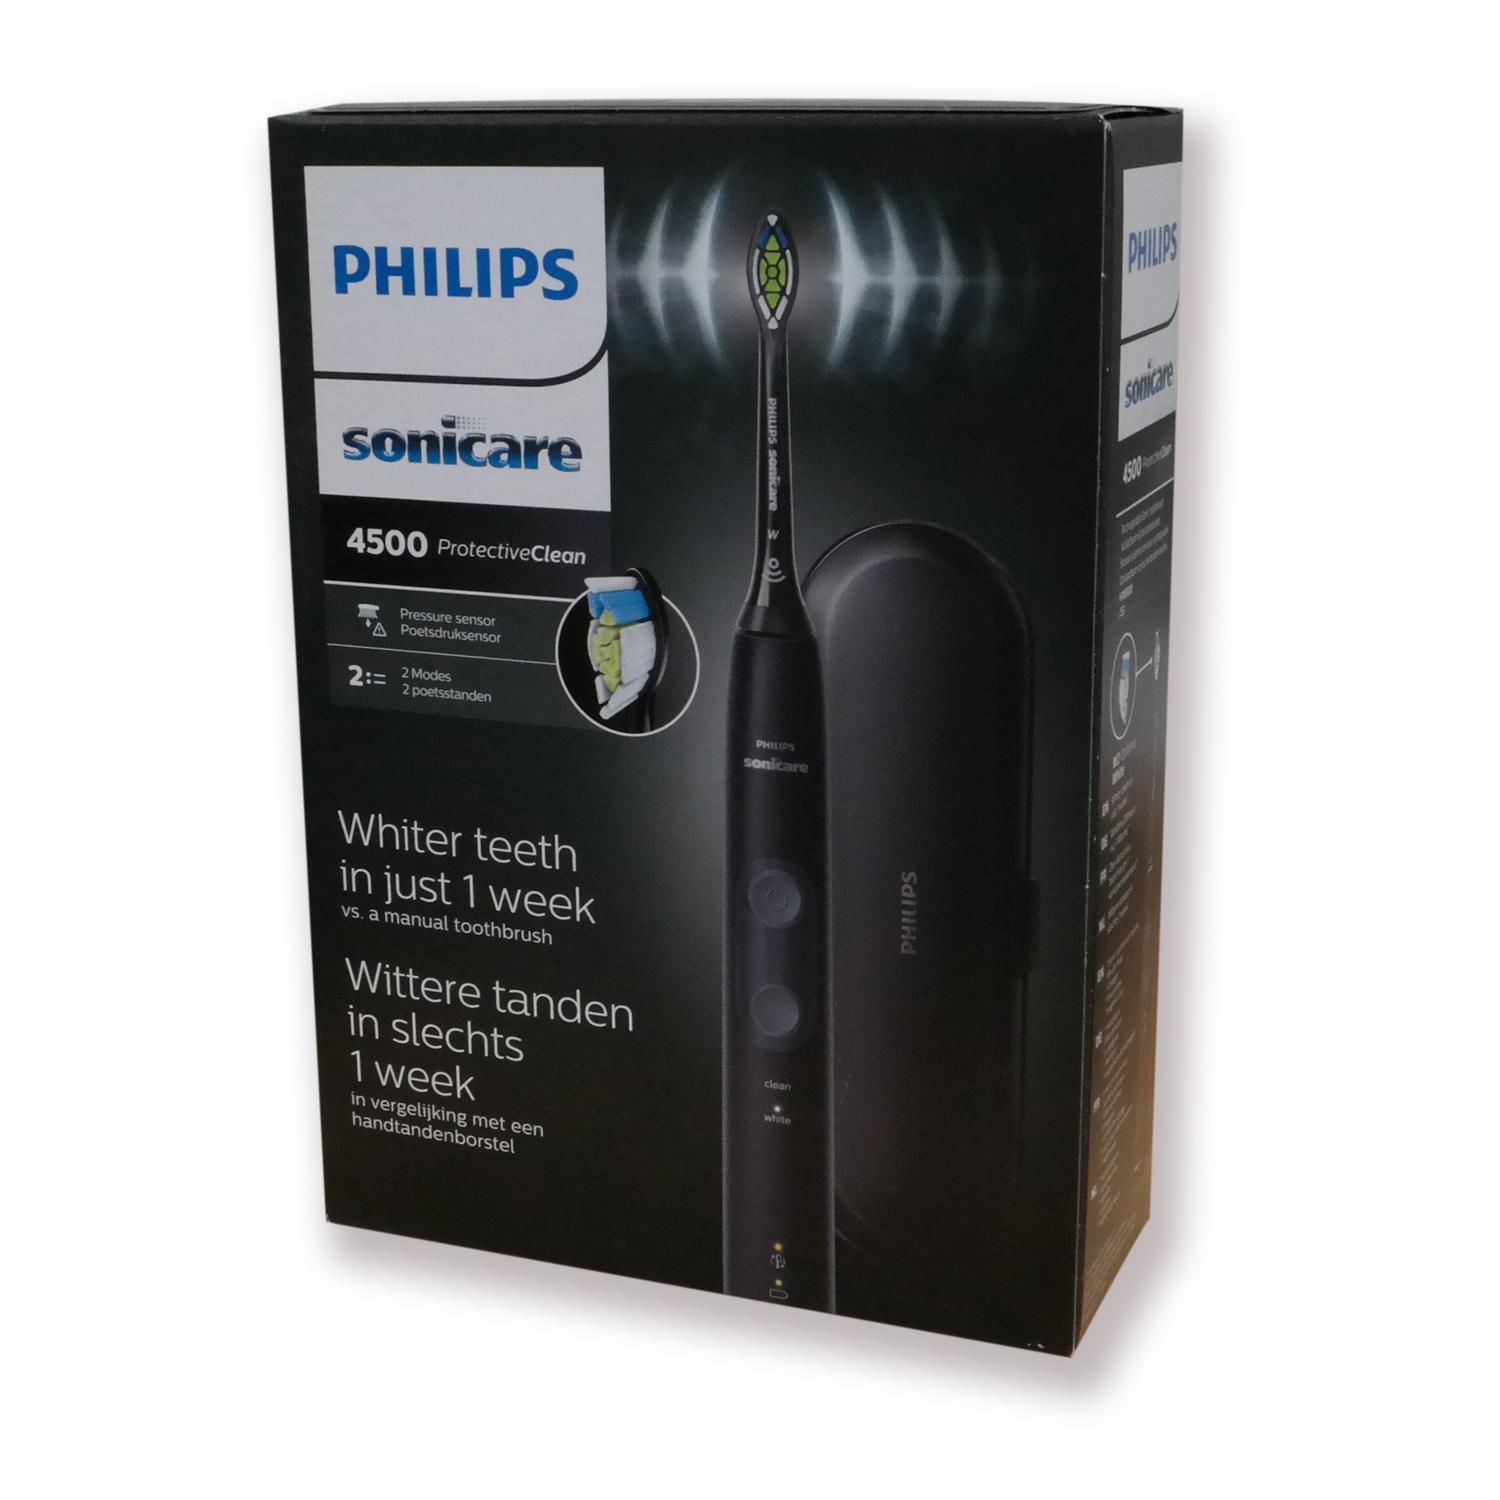 Philips Sonicare ProtectiveClean 4500 elektrische Zahnbürste HX6830/53 Schallzahnbürste, Reise-Etui schwarz